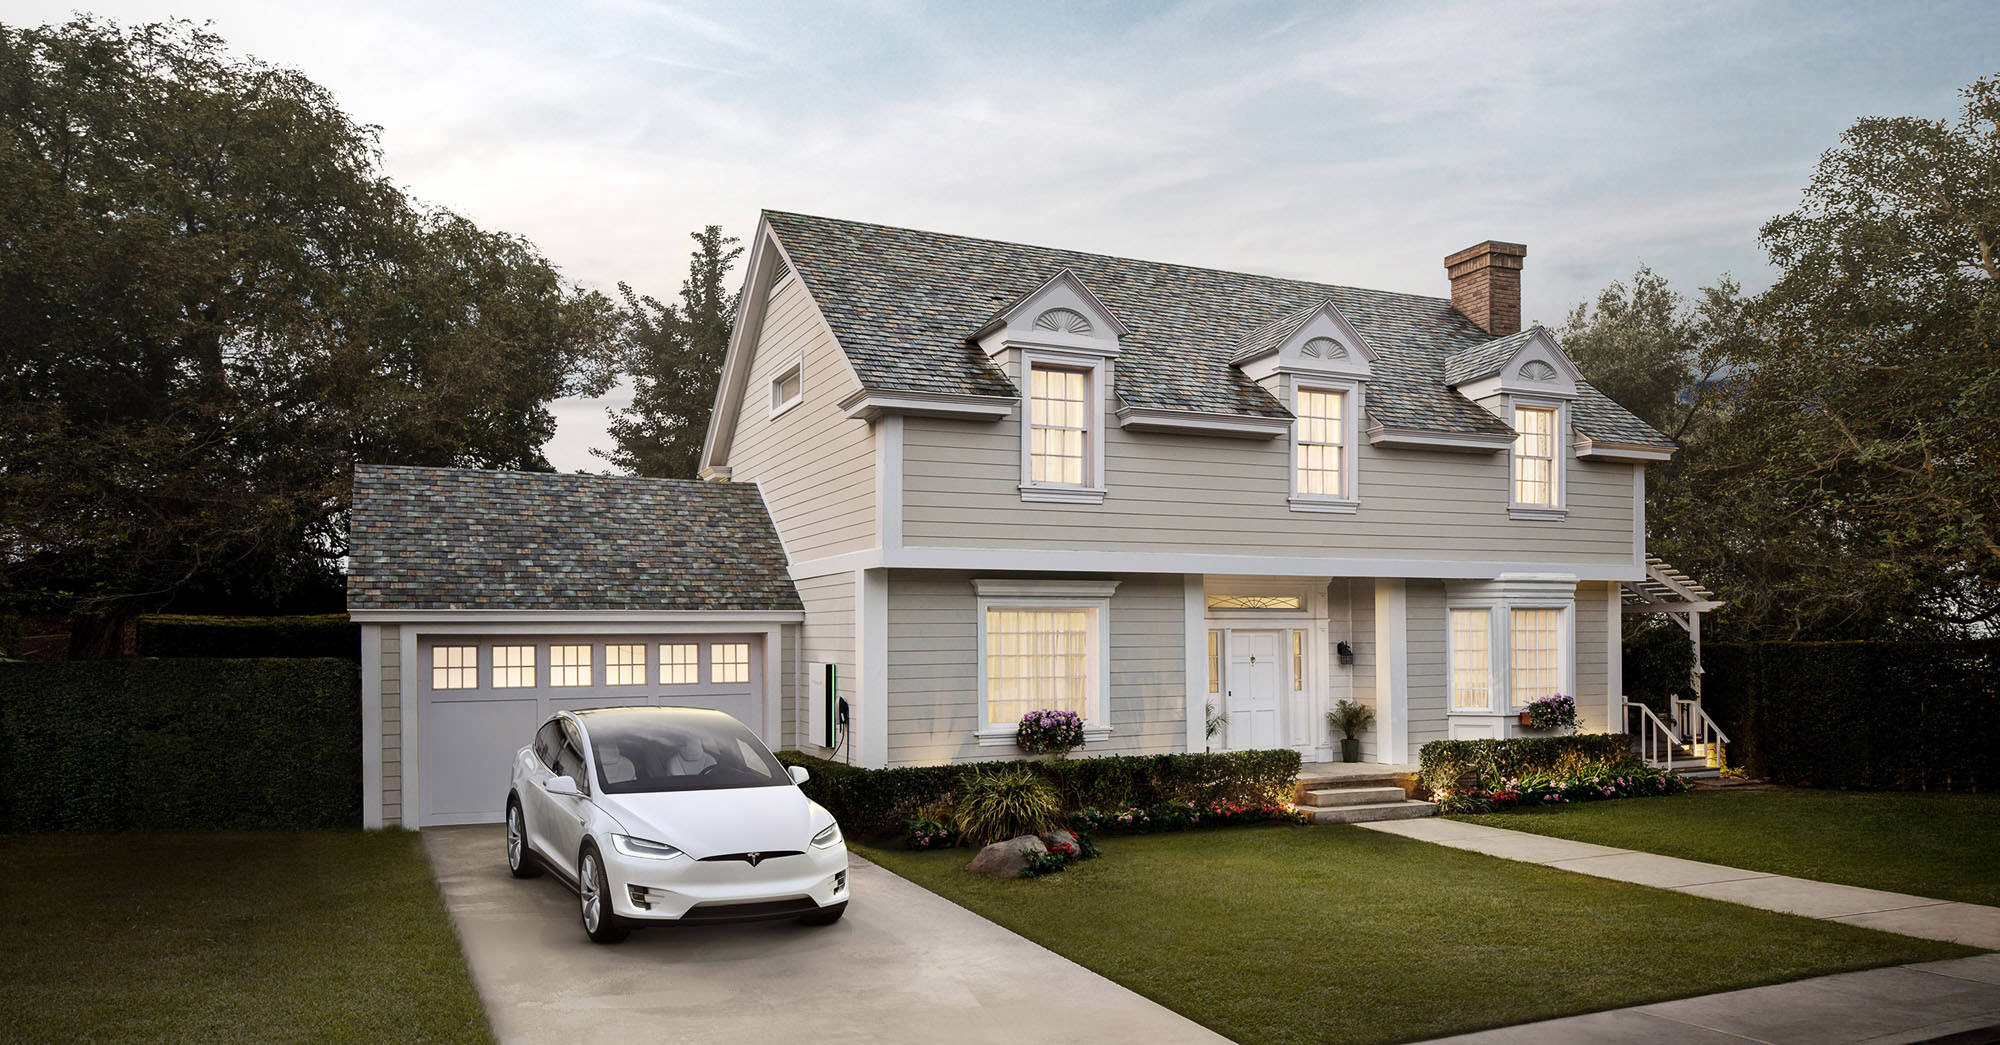 Tesla Motors - Solar Roof and Powerwall